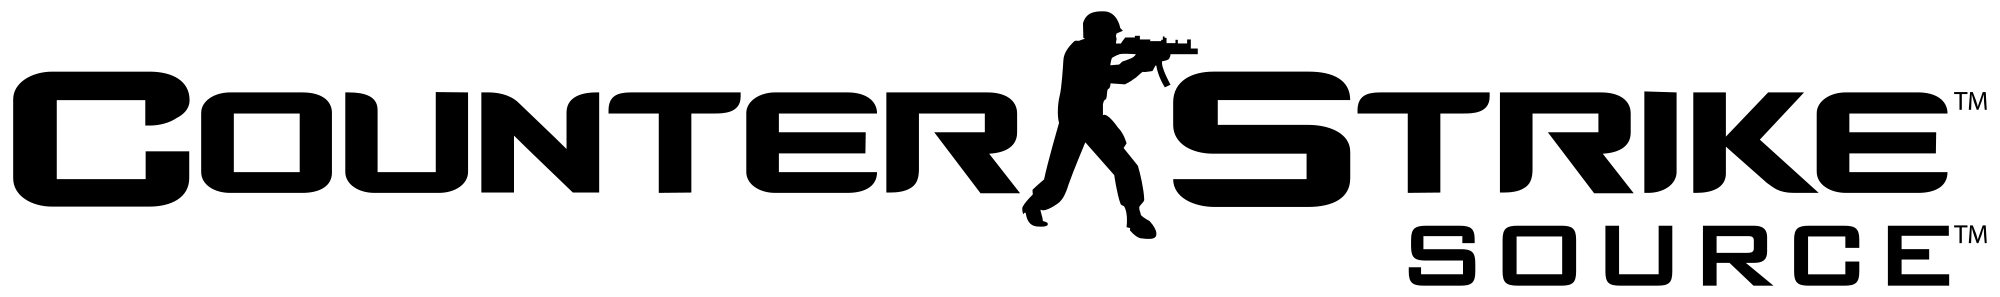 Source Logo - Counter Strike Png Logo Transparent PNG Logos